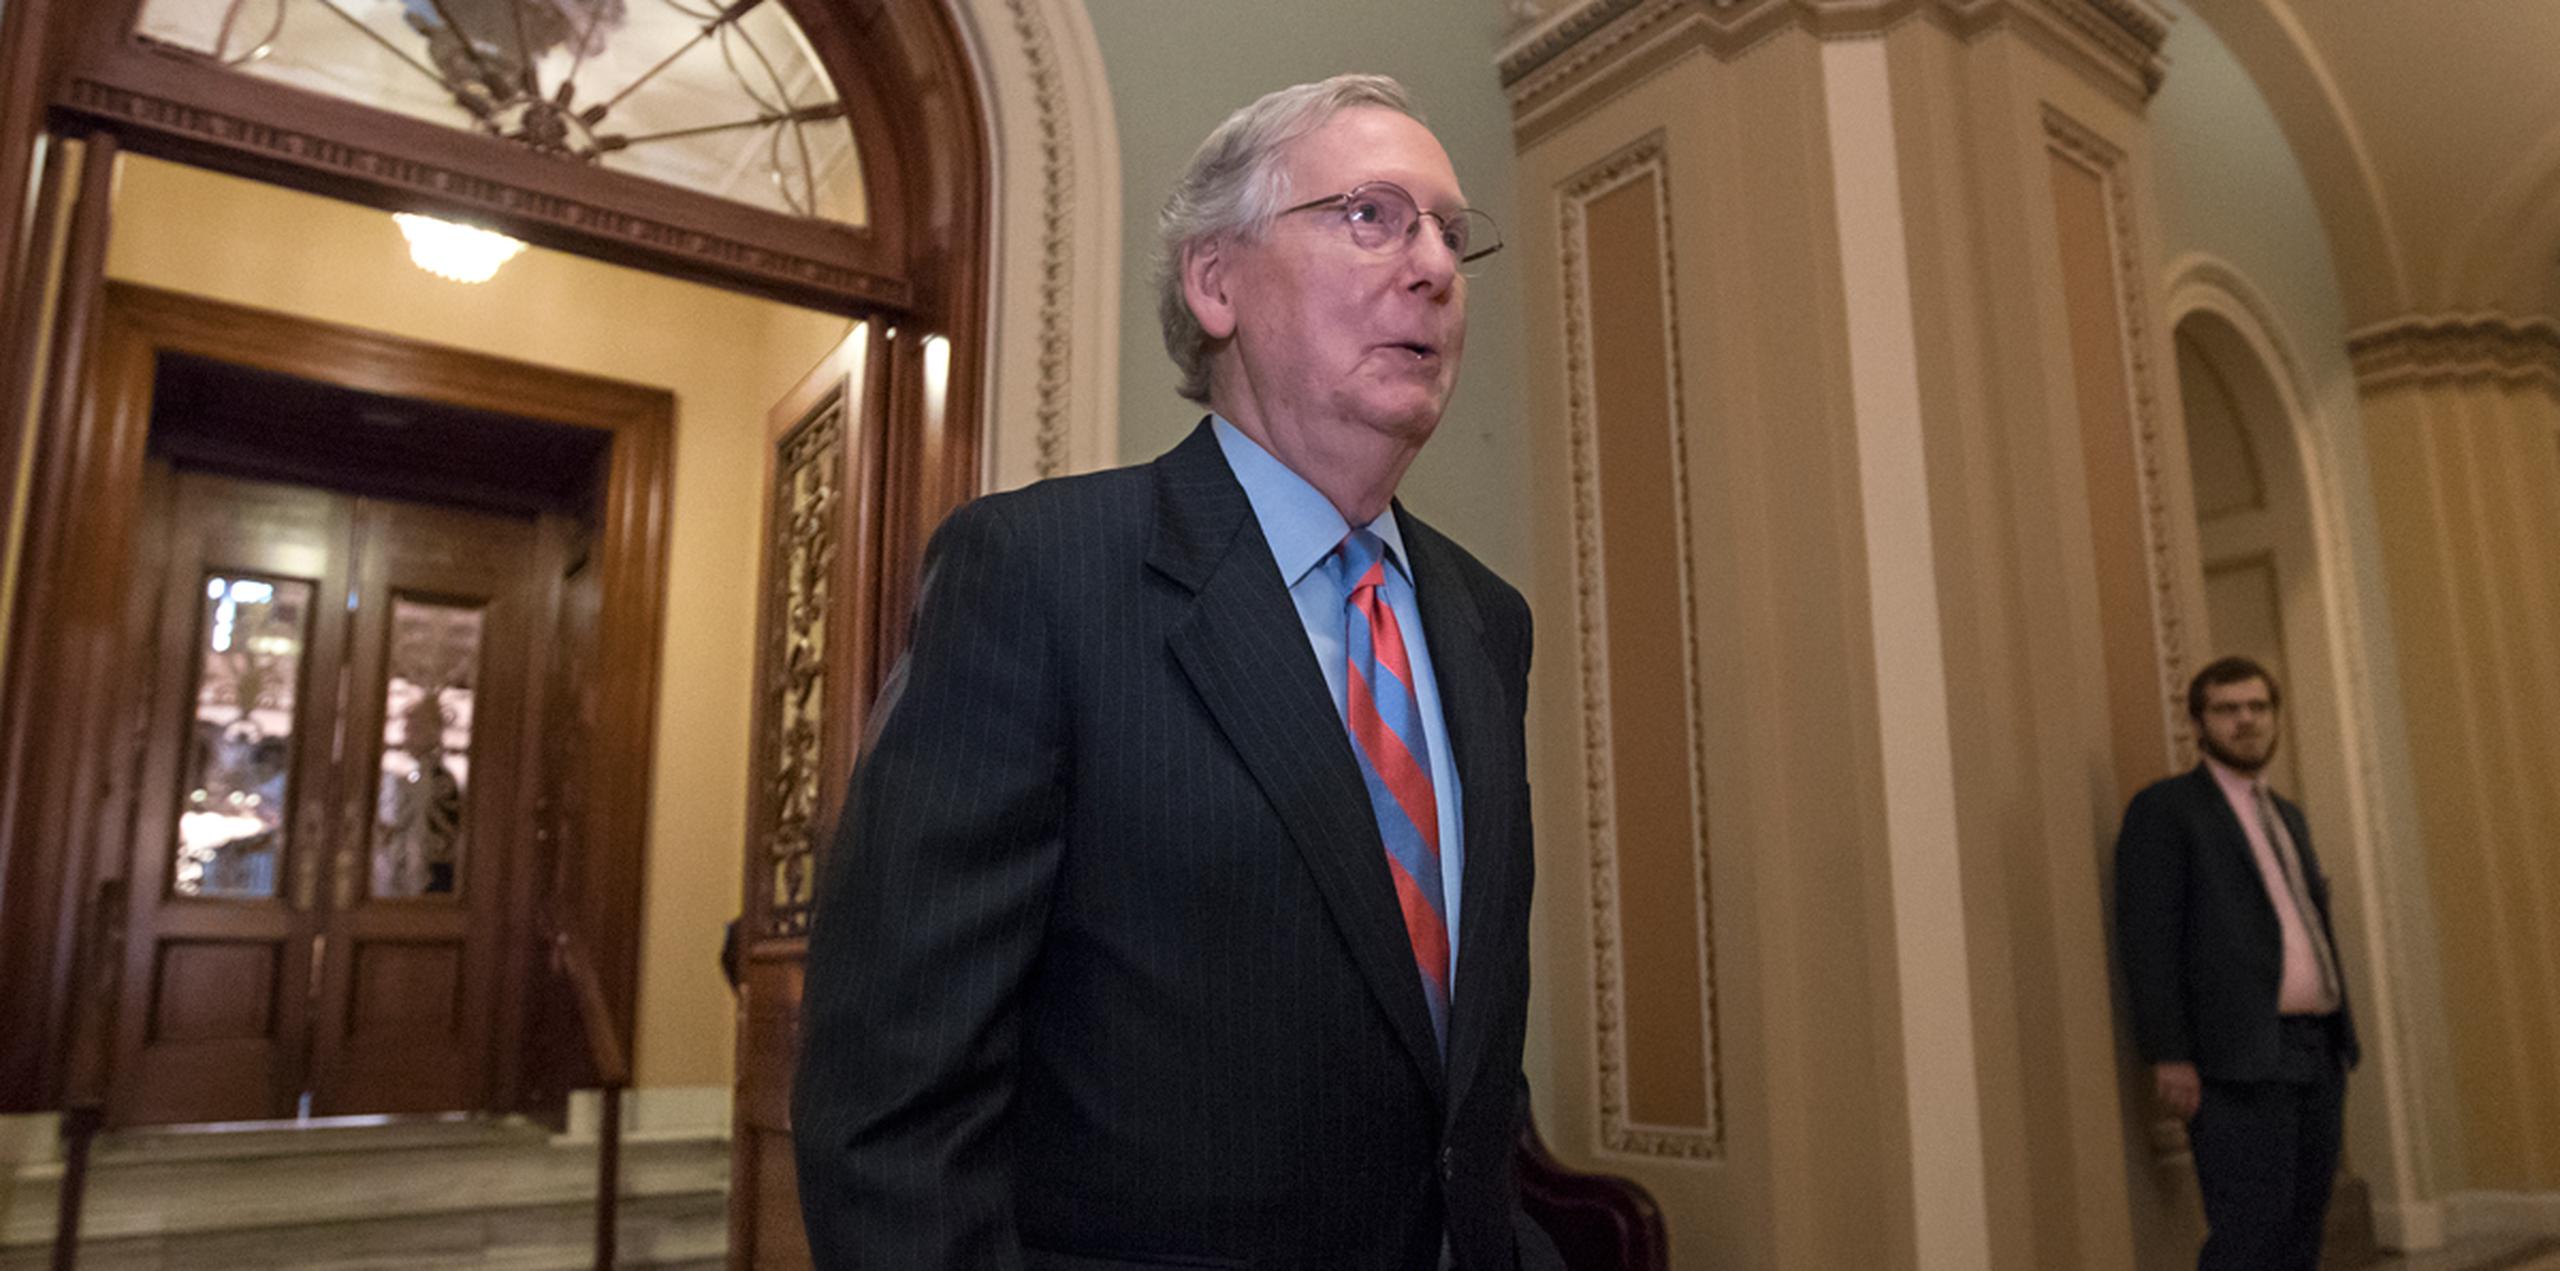 El líder de la mayoría, Mitch McConnell, dejó la norma sanitaria en suspenso y anunció que el Senado abordará a otra legislación la próxima semana. (AP)